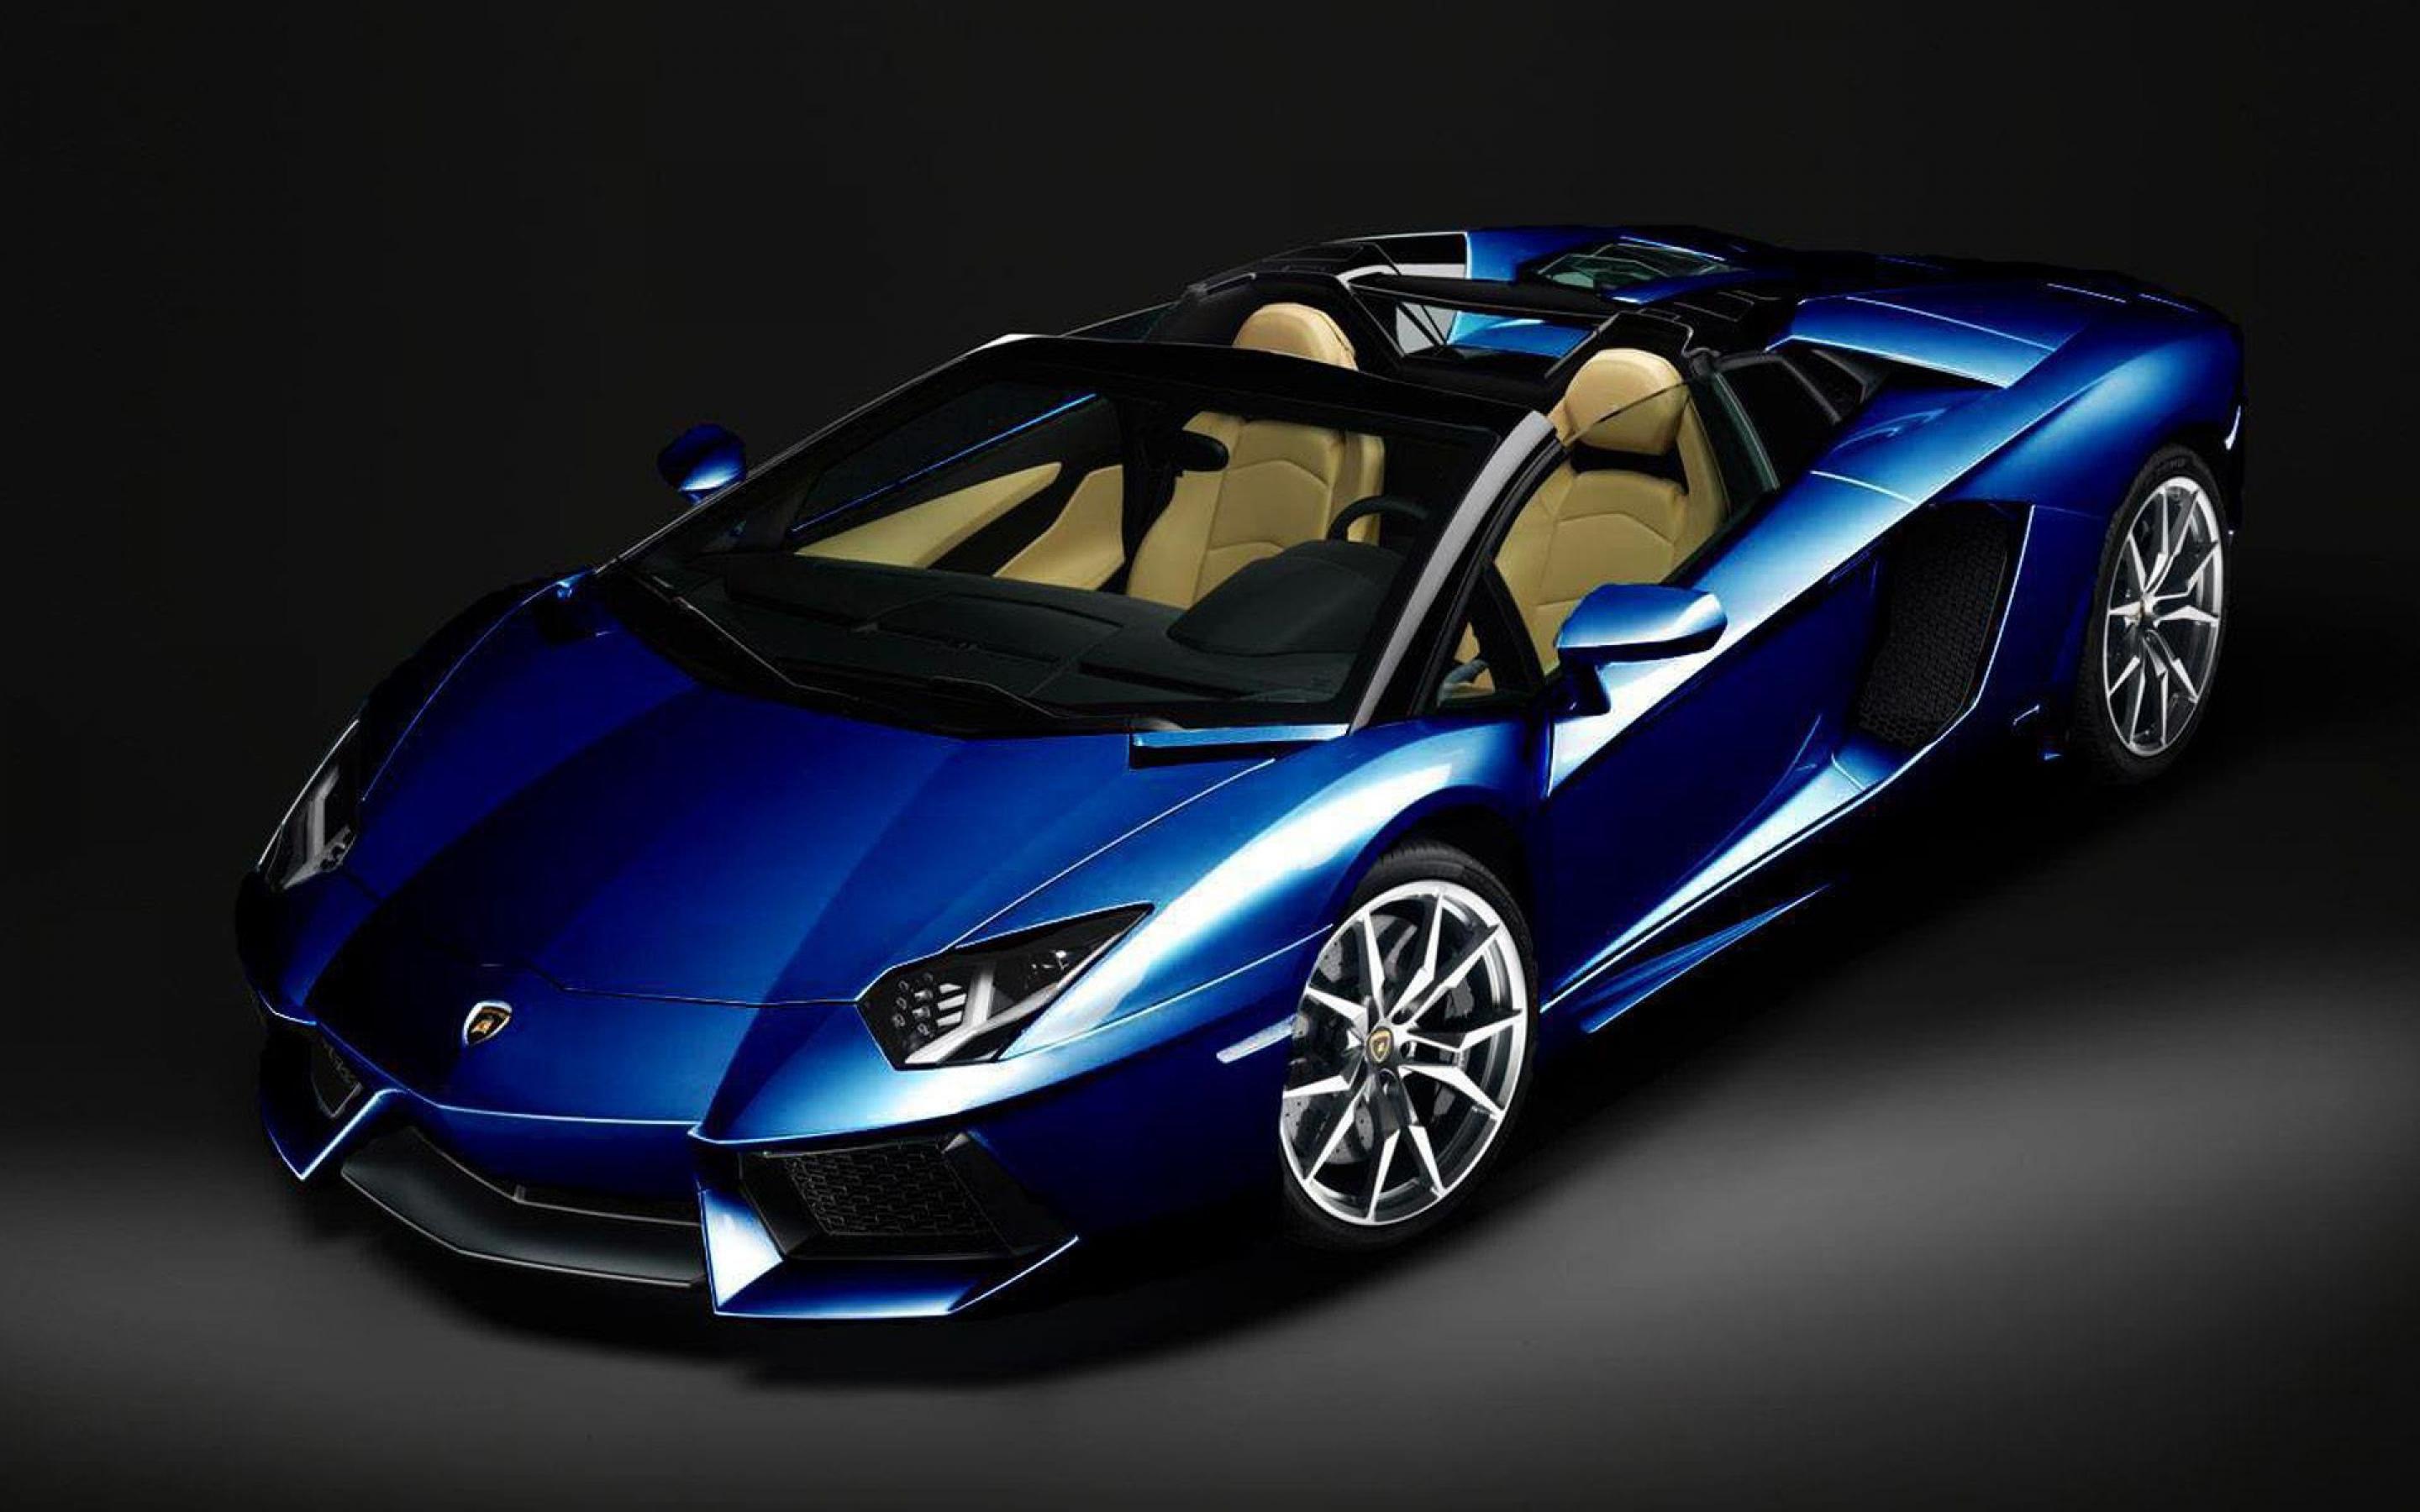 Blue Lamborghini Wallpaper Full HD Free Download > SubWallpaper